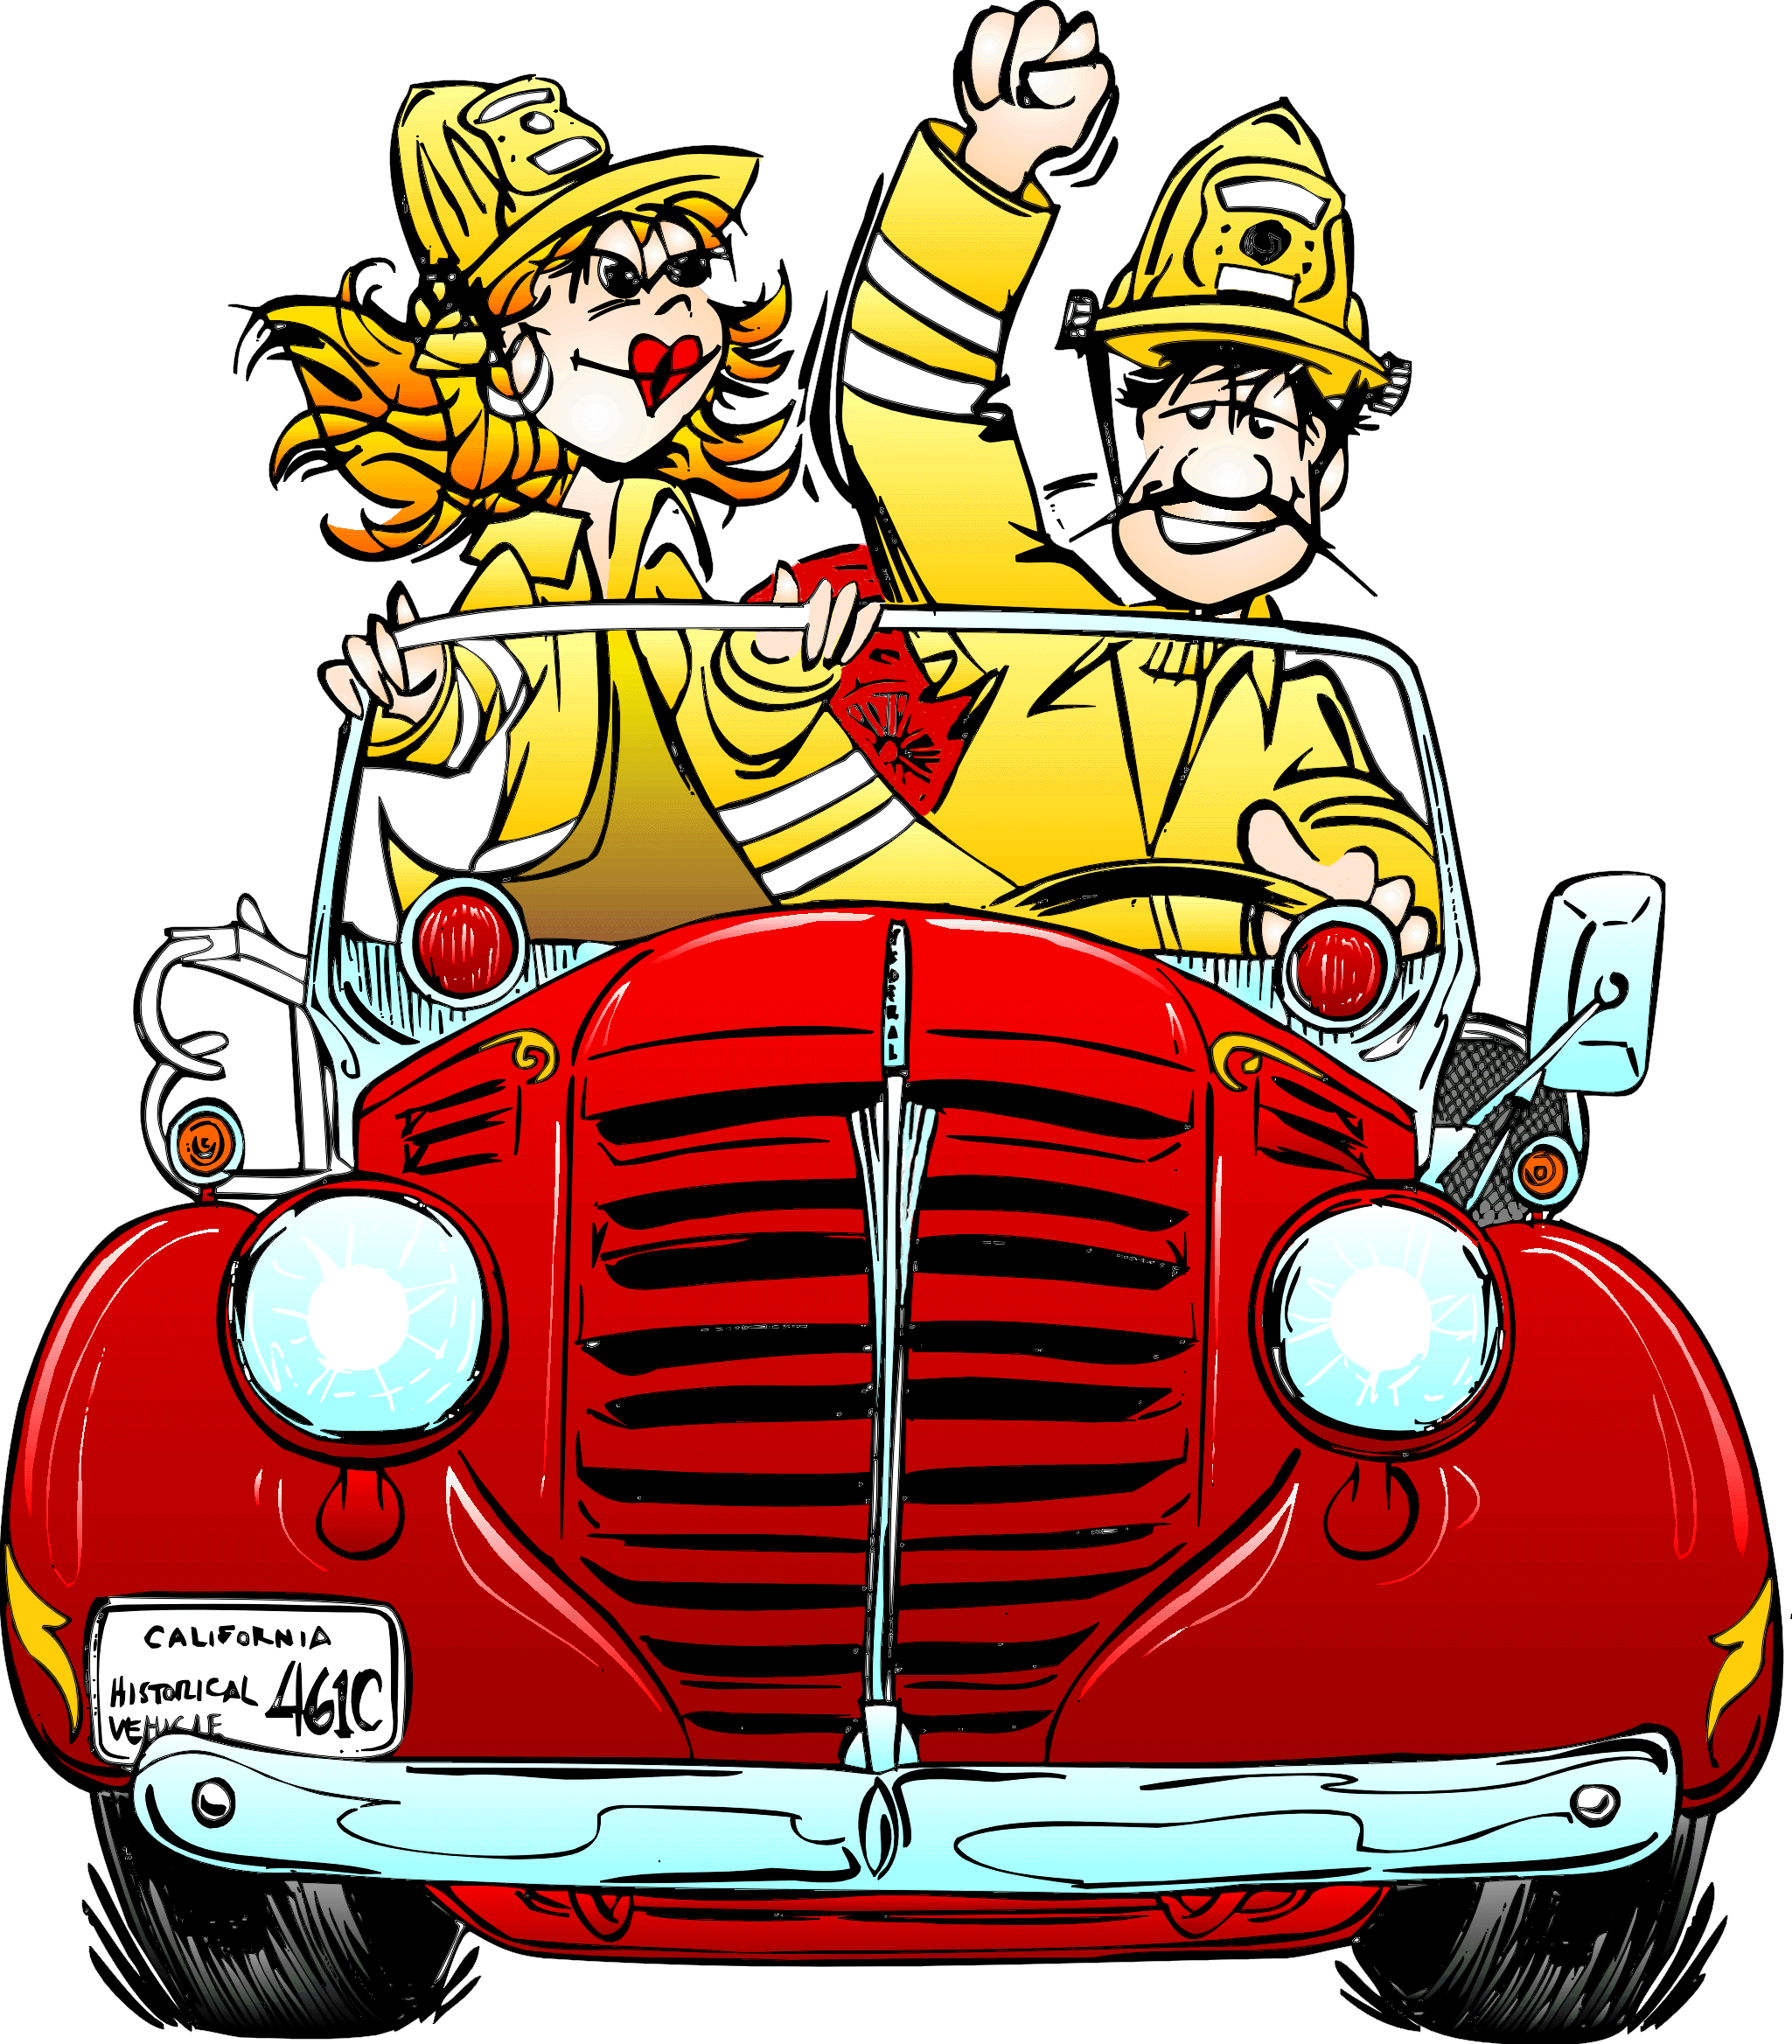 Fire Truck Cartoon - ClipArt Best